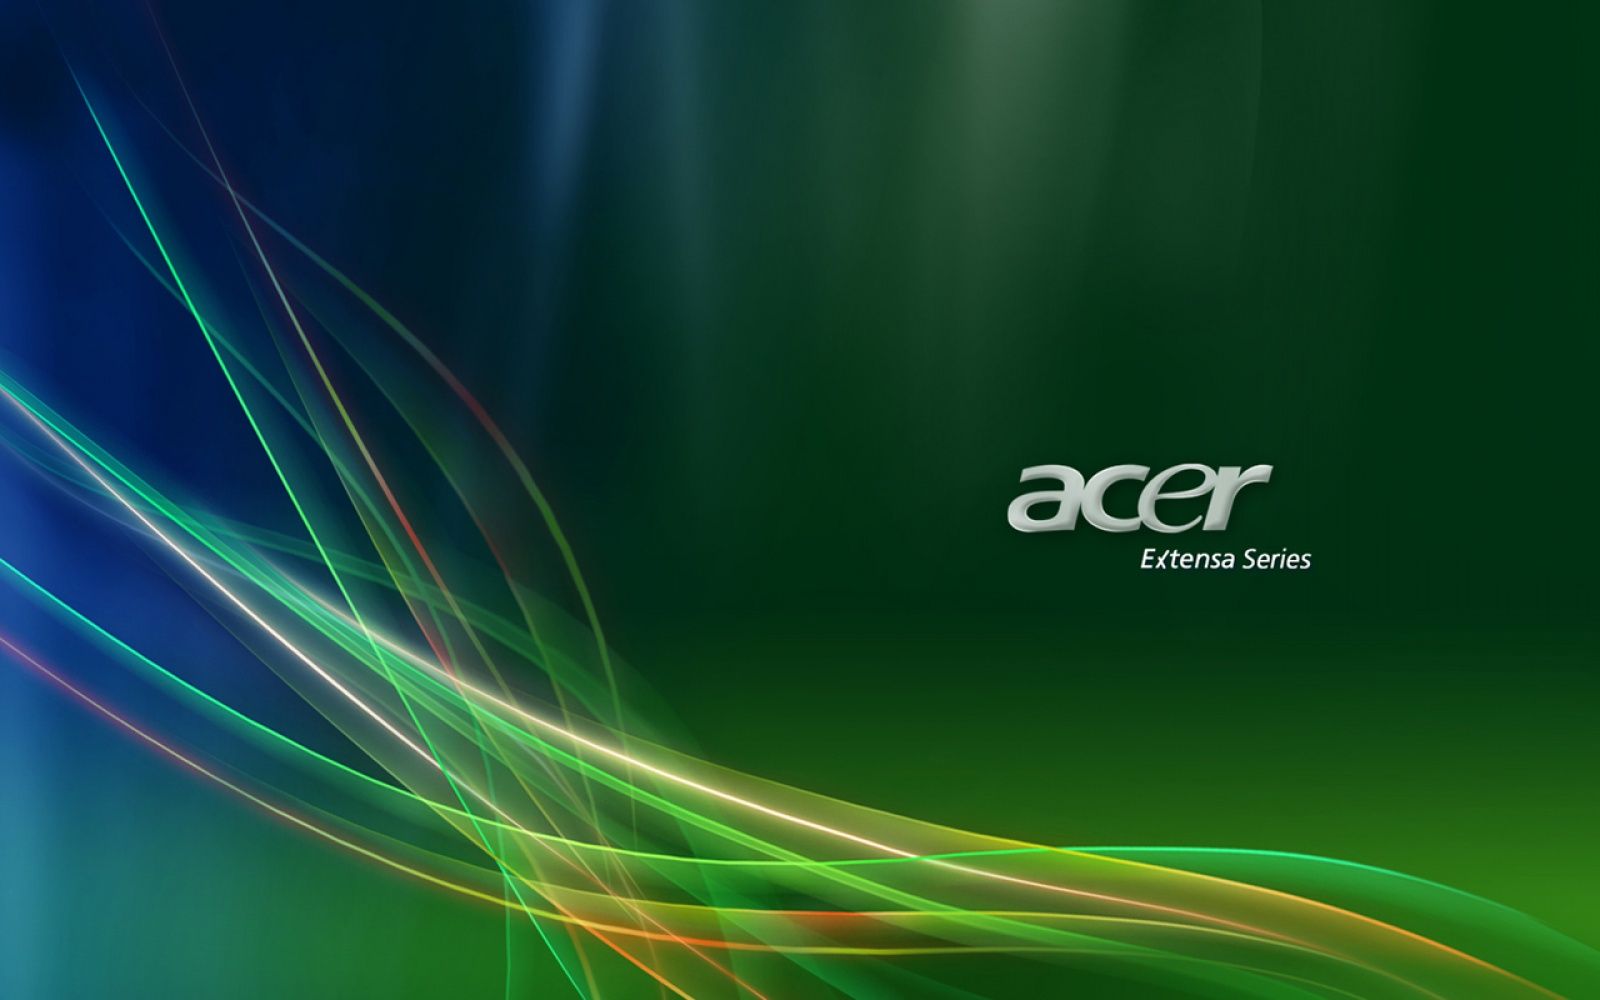 Acer Wallpapers là bộ sưu tập hình nền tuyệt vời mà bạn không thể bỏ qua. Chất lượng hình ảnh sáng tạo, độ phân giải cao và đặc biệt phù hợp với nhiều loại máy tính. Hãy chọn ngay một bức hình để tìm kiếm sự sang trọng và ấn tượng cho màn hình máy tính của bạn.